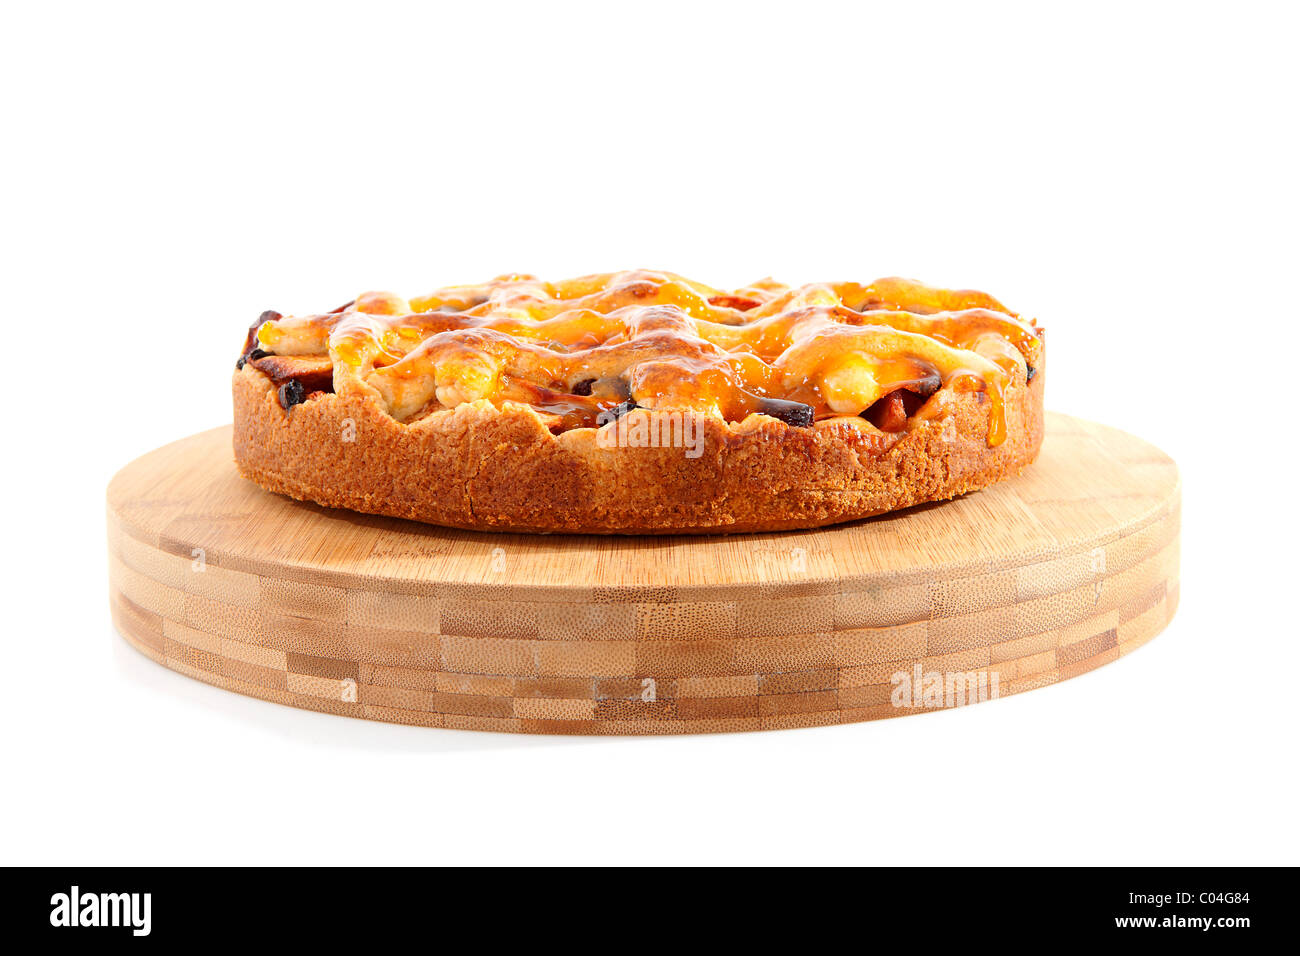 Home mela cotta torta sul tagliere di legno su sfondo bianco Foto Stock